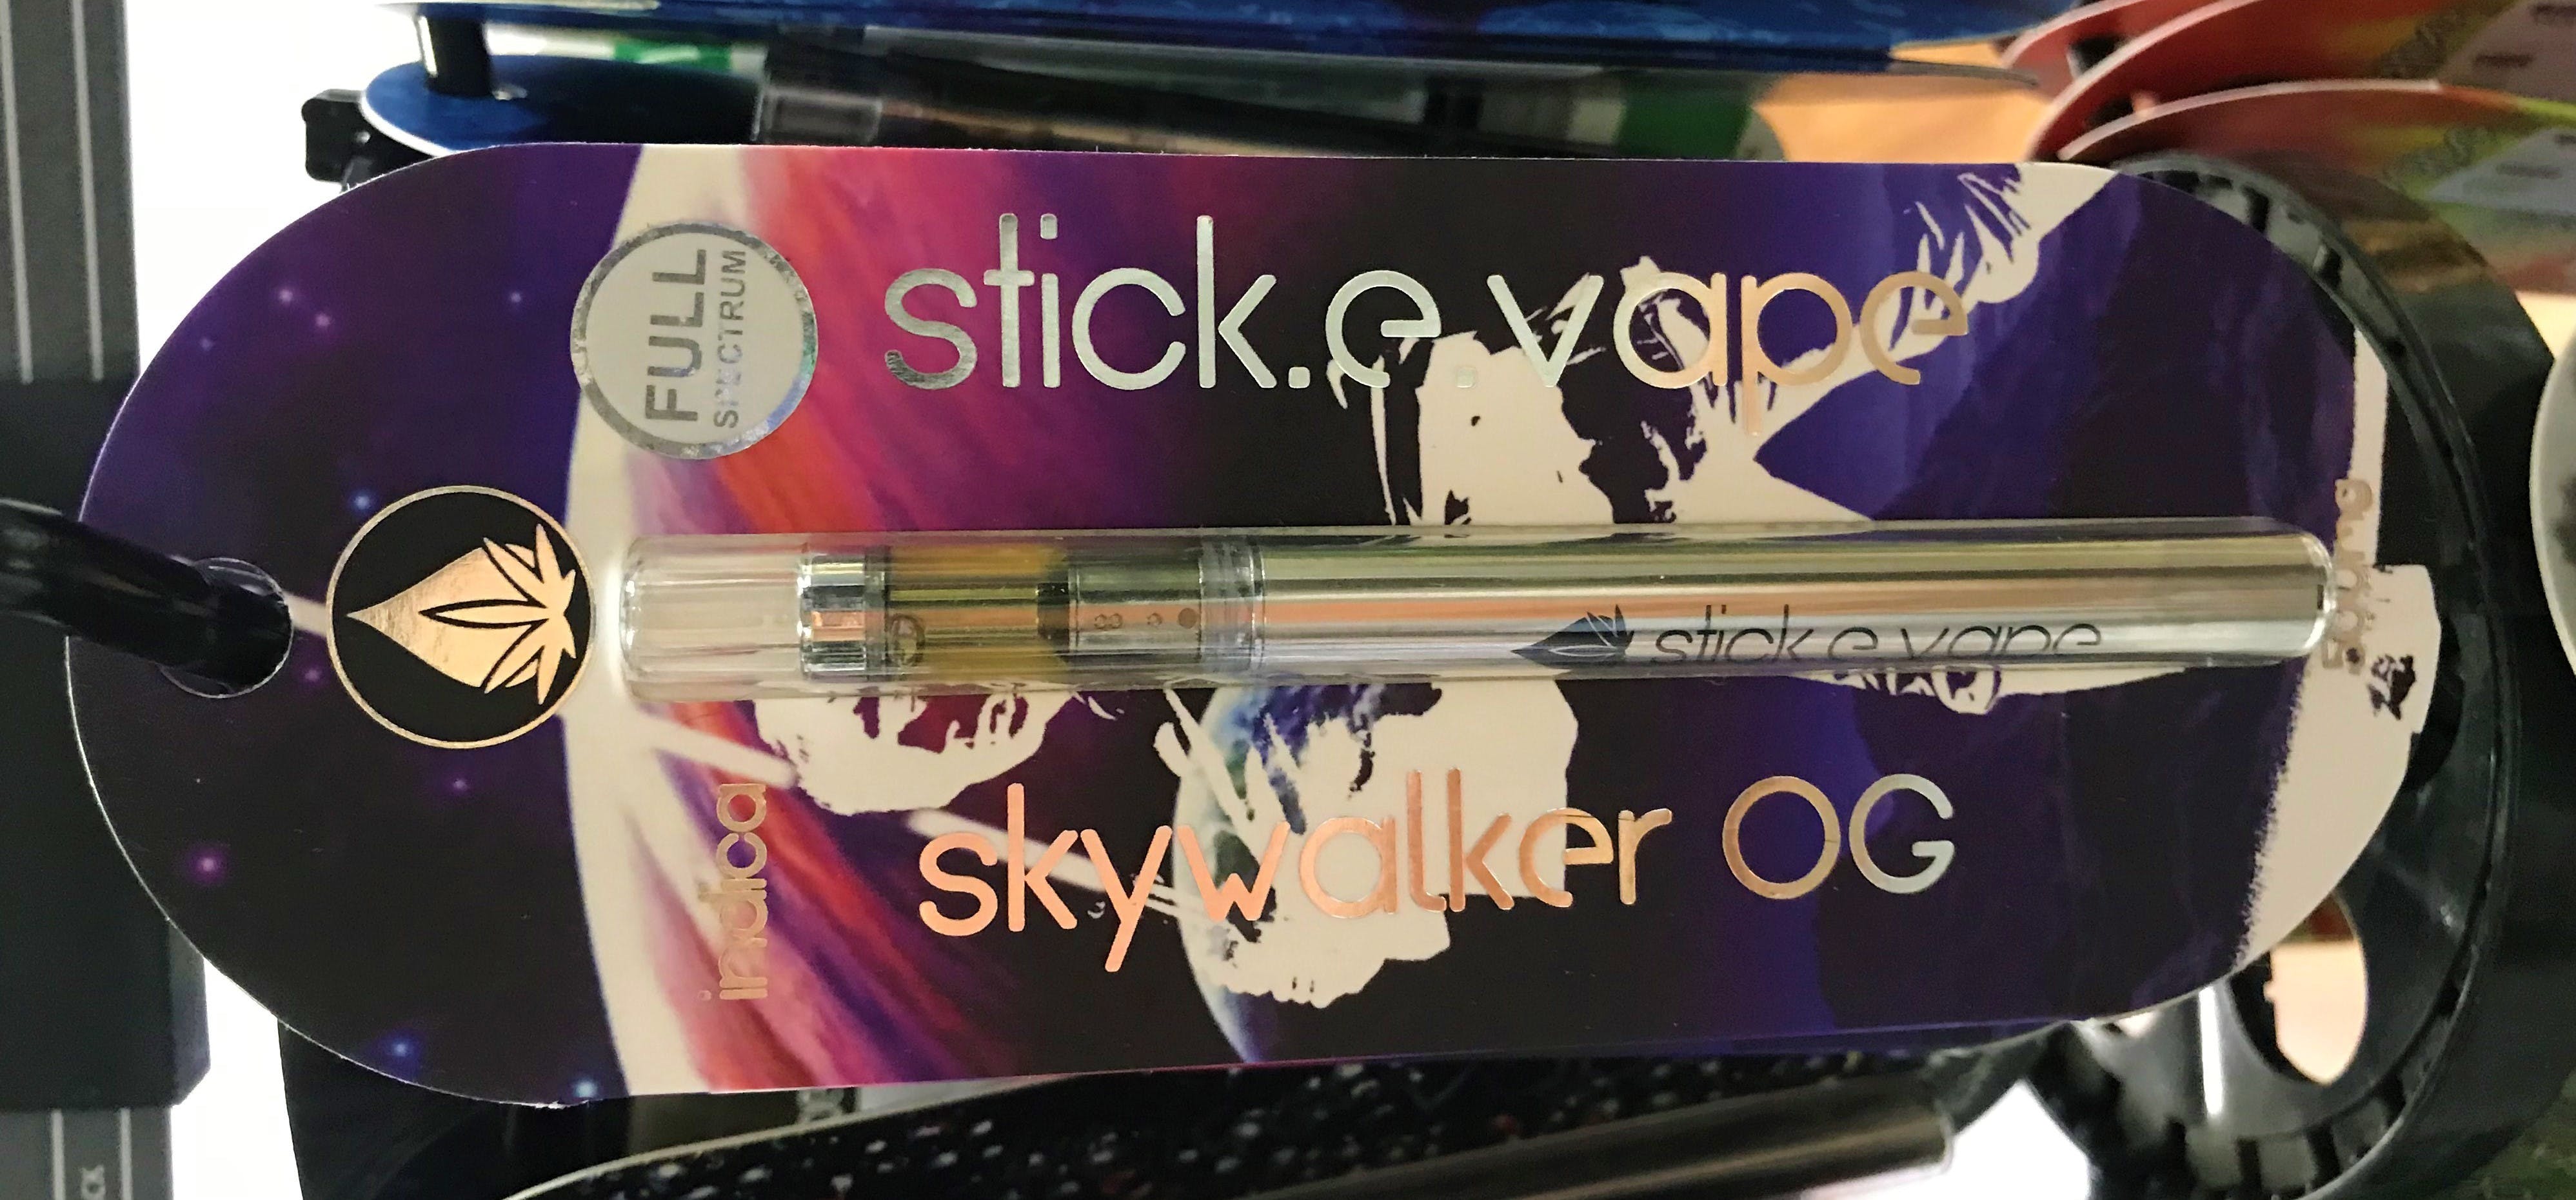 concentrate-stick-e-vape-skywalker-og-500mg-disposable